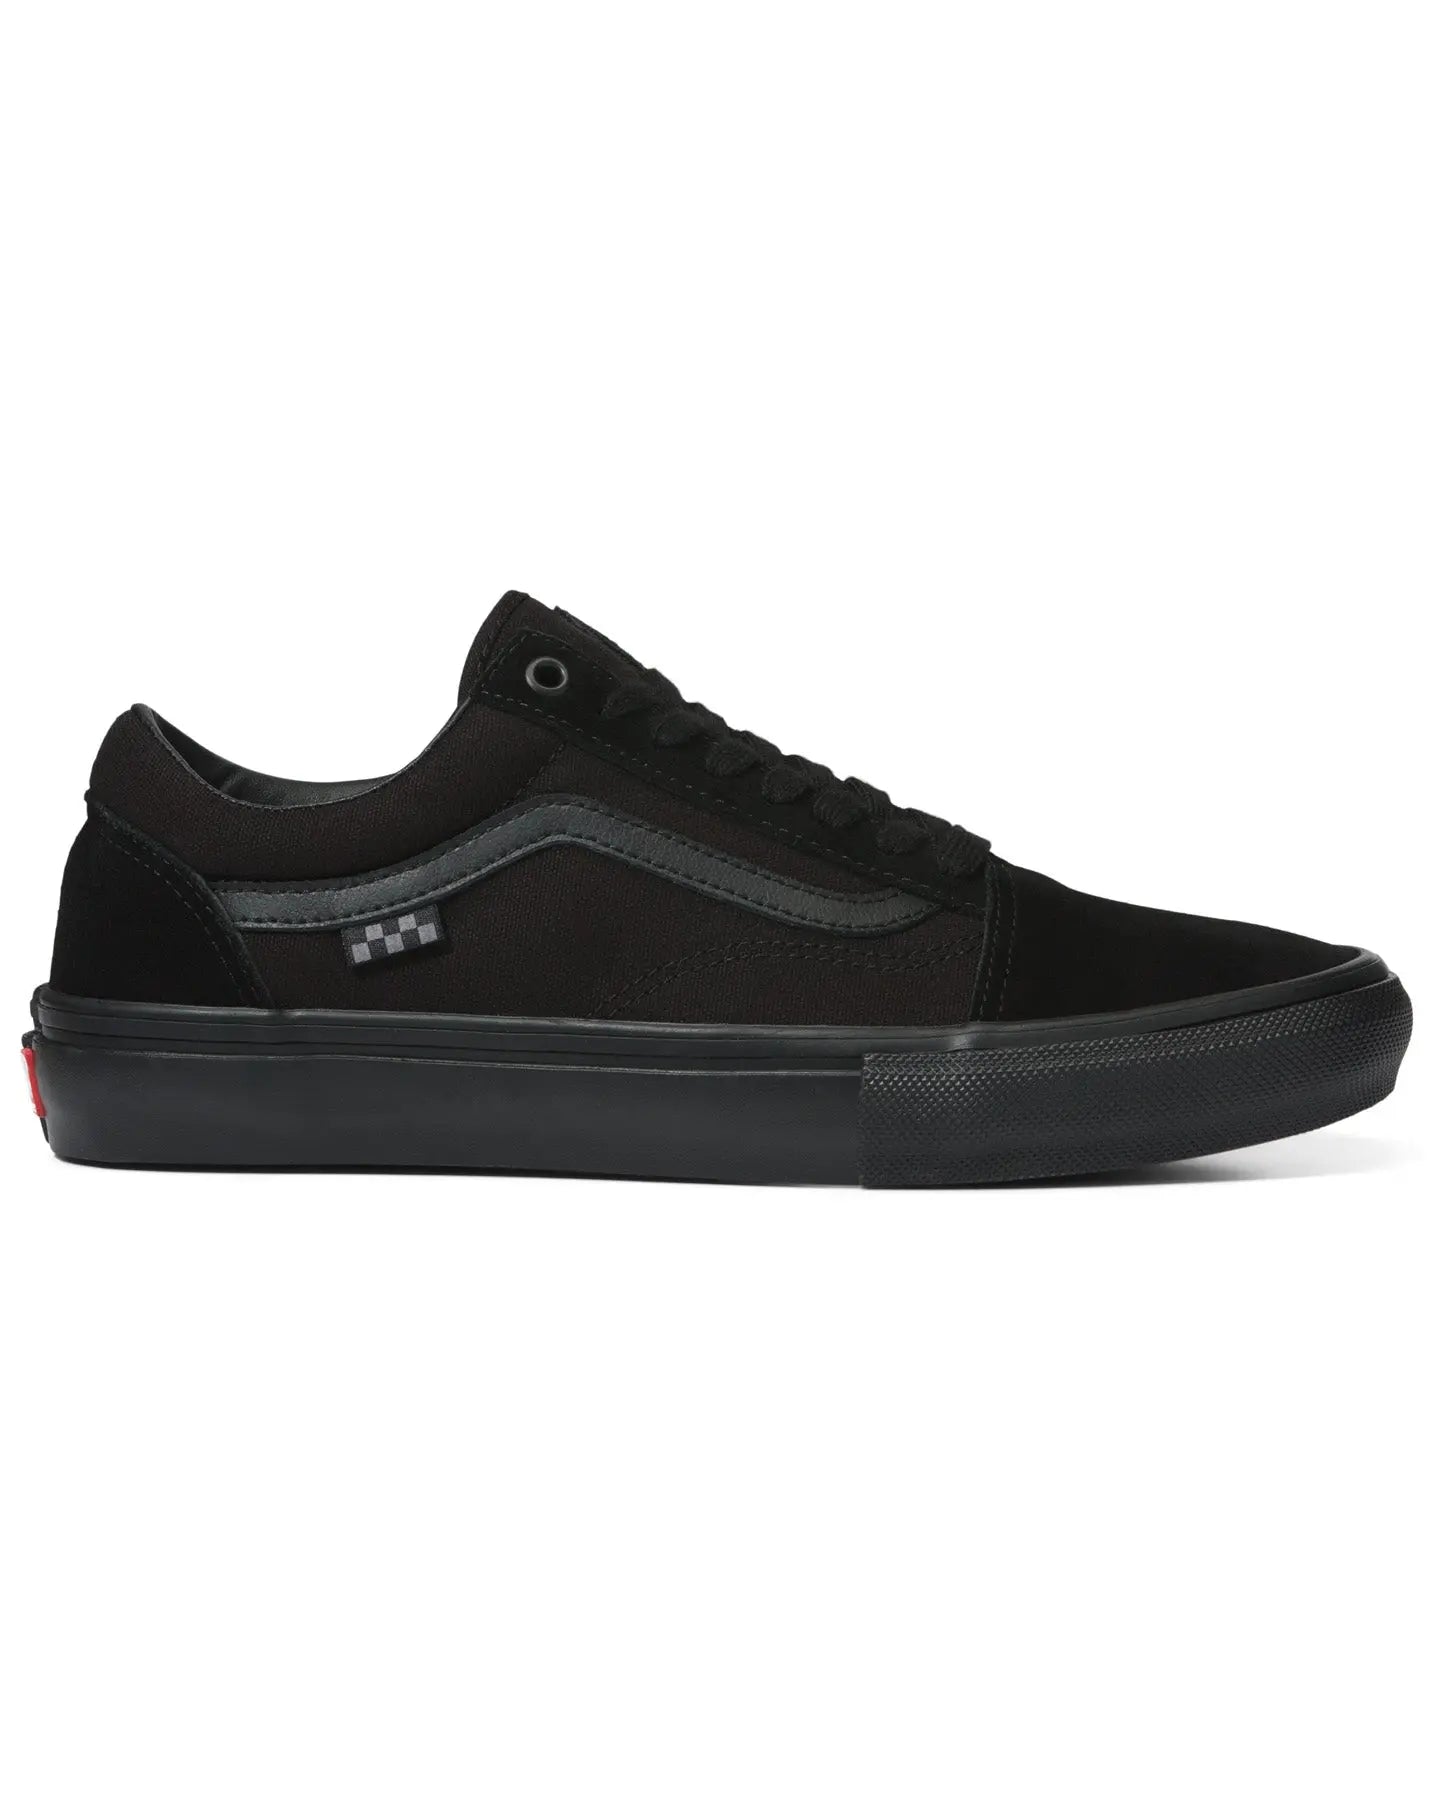 Vans Skate Old Skool - Black / Black Footwear